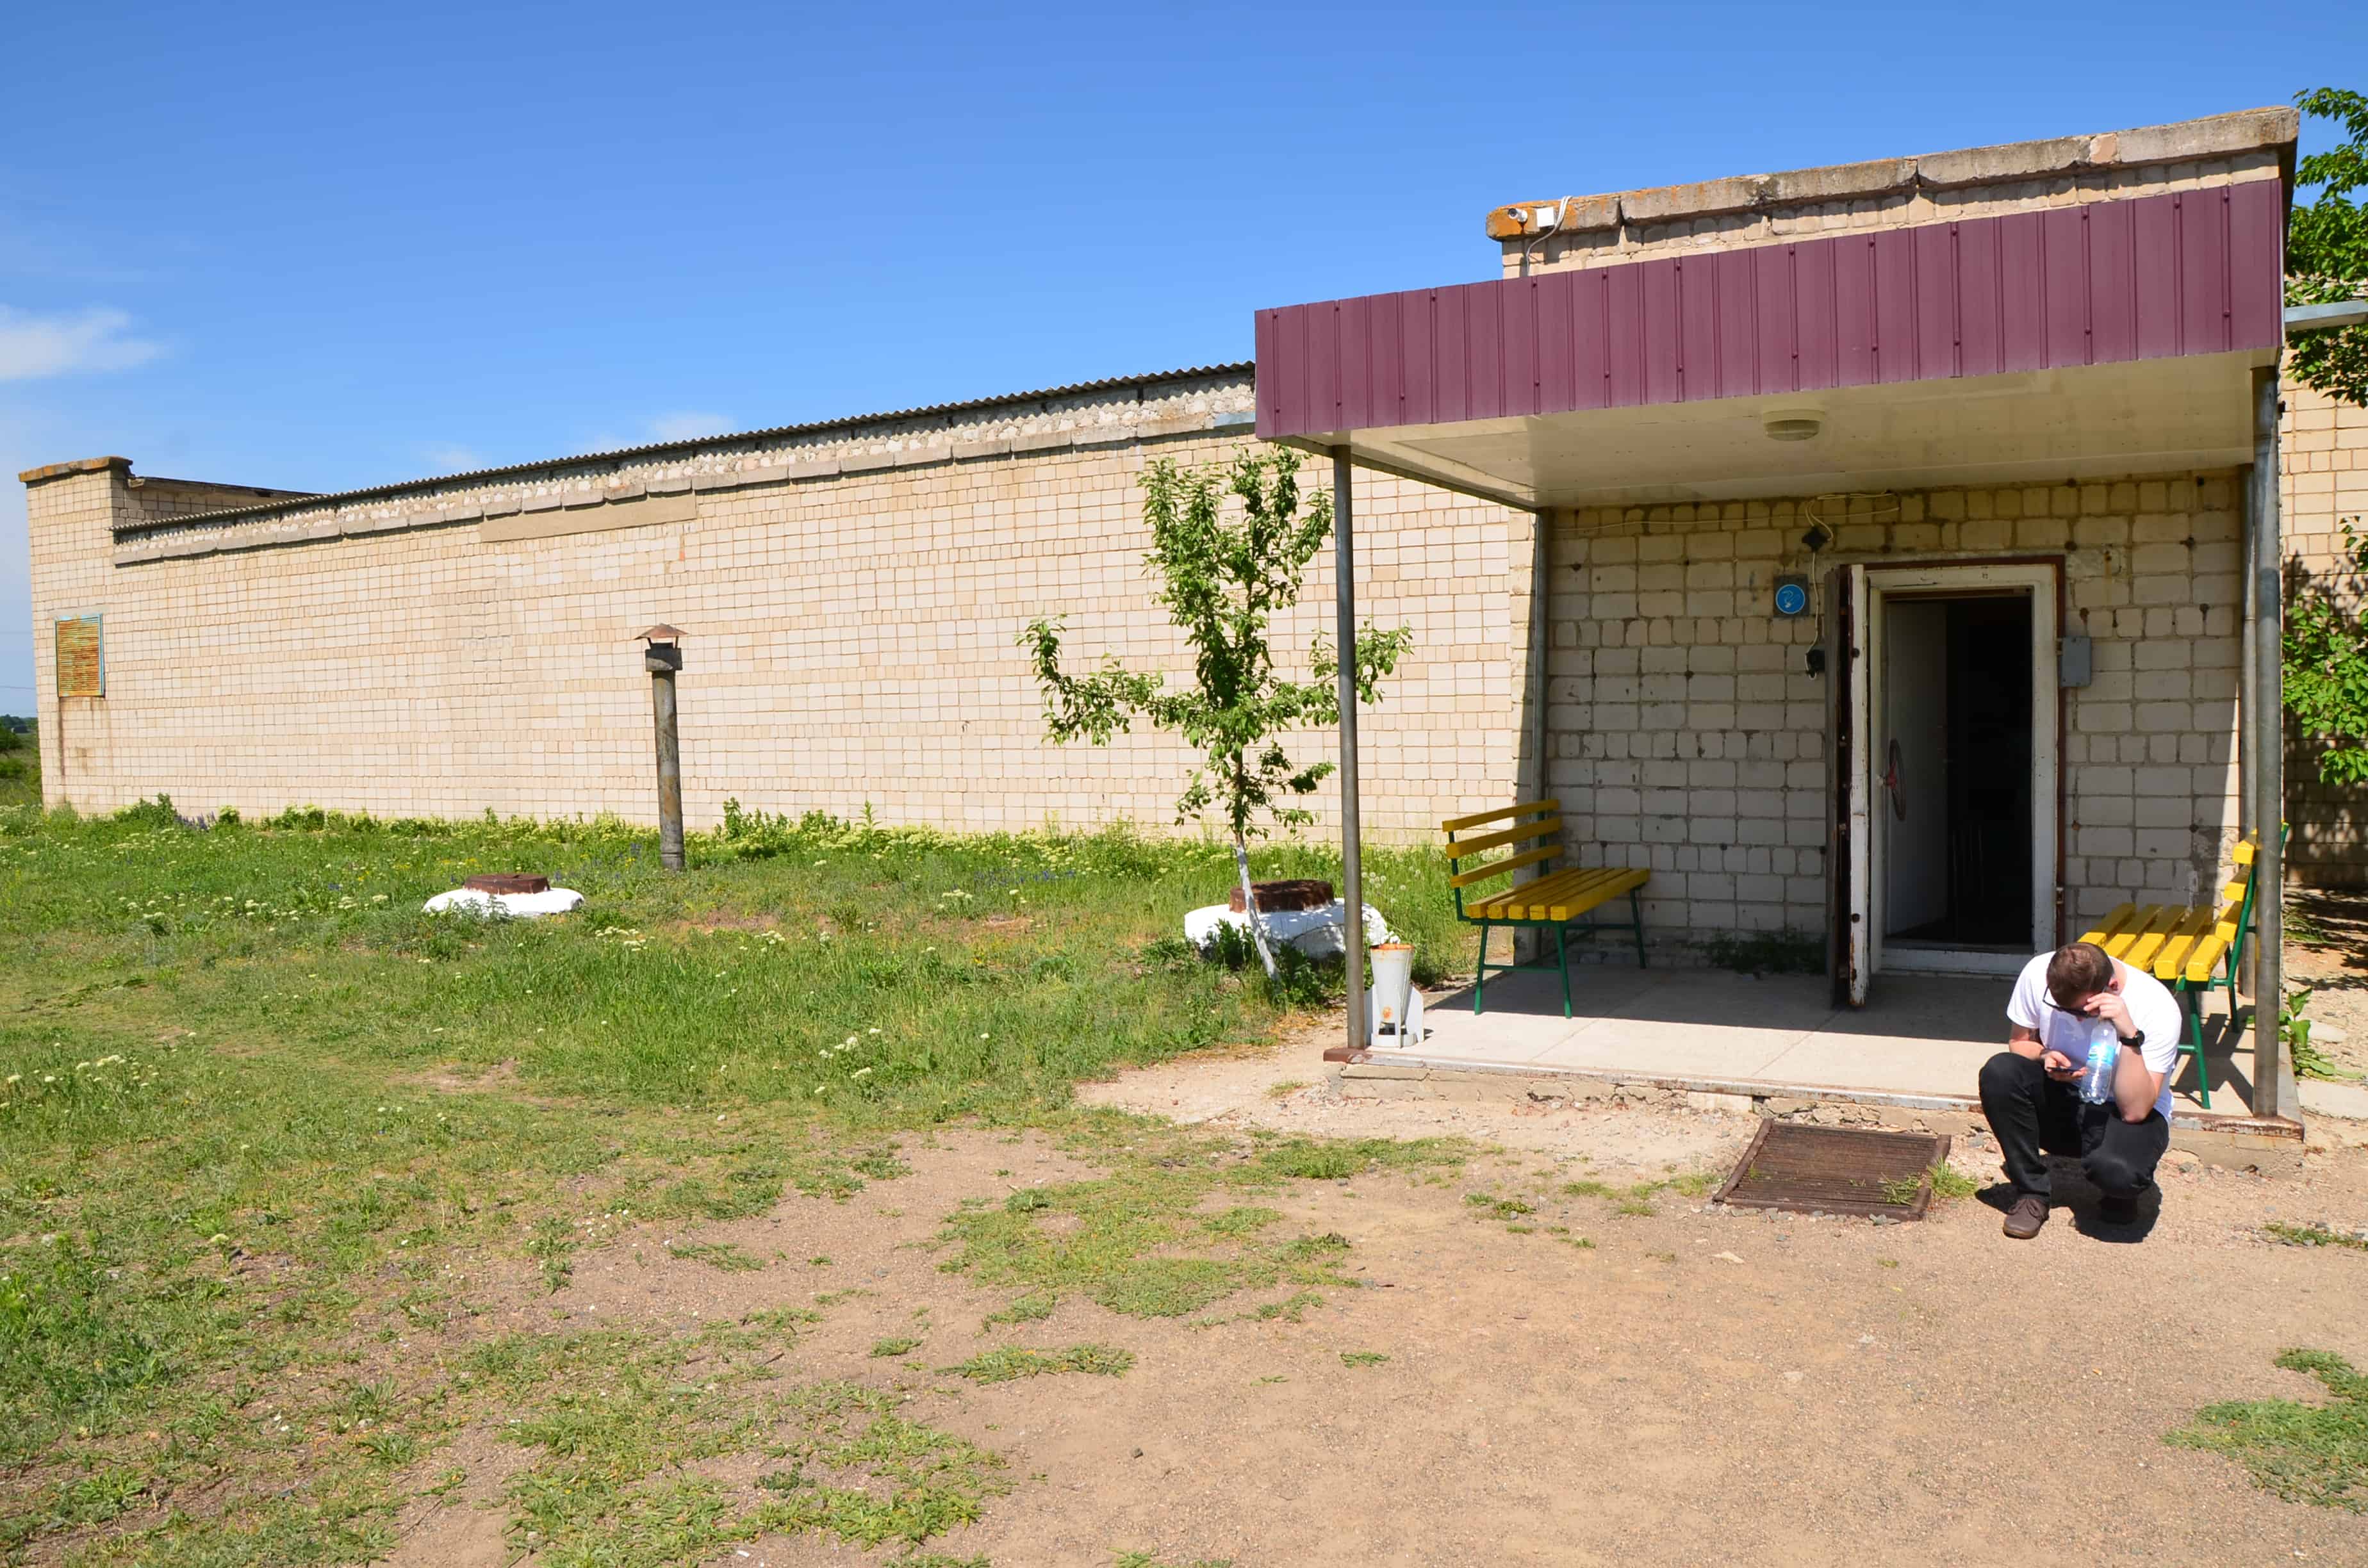 Refrigeration facility at Strategic Missile Forces Museum near Pobuzke, Ukraine